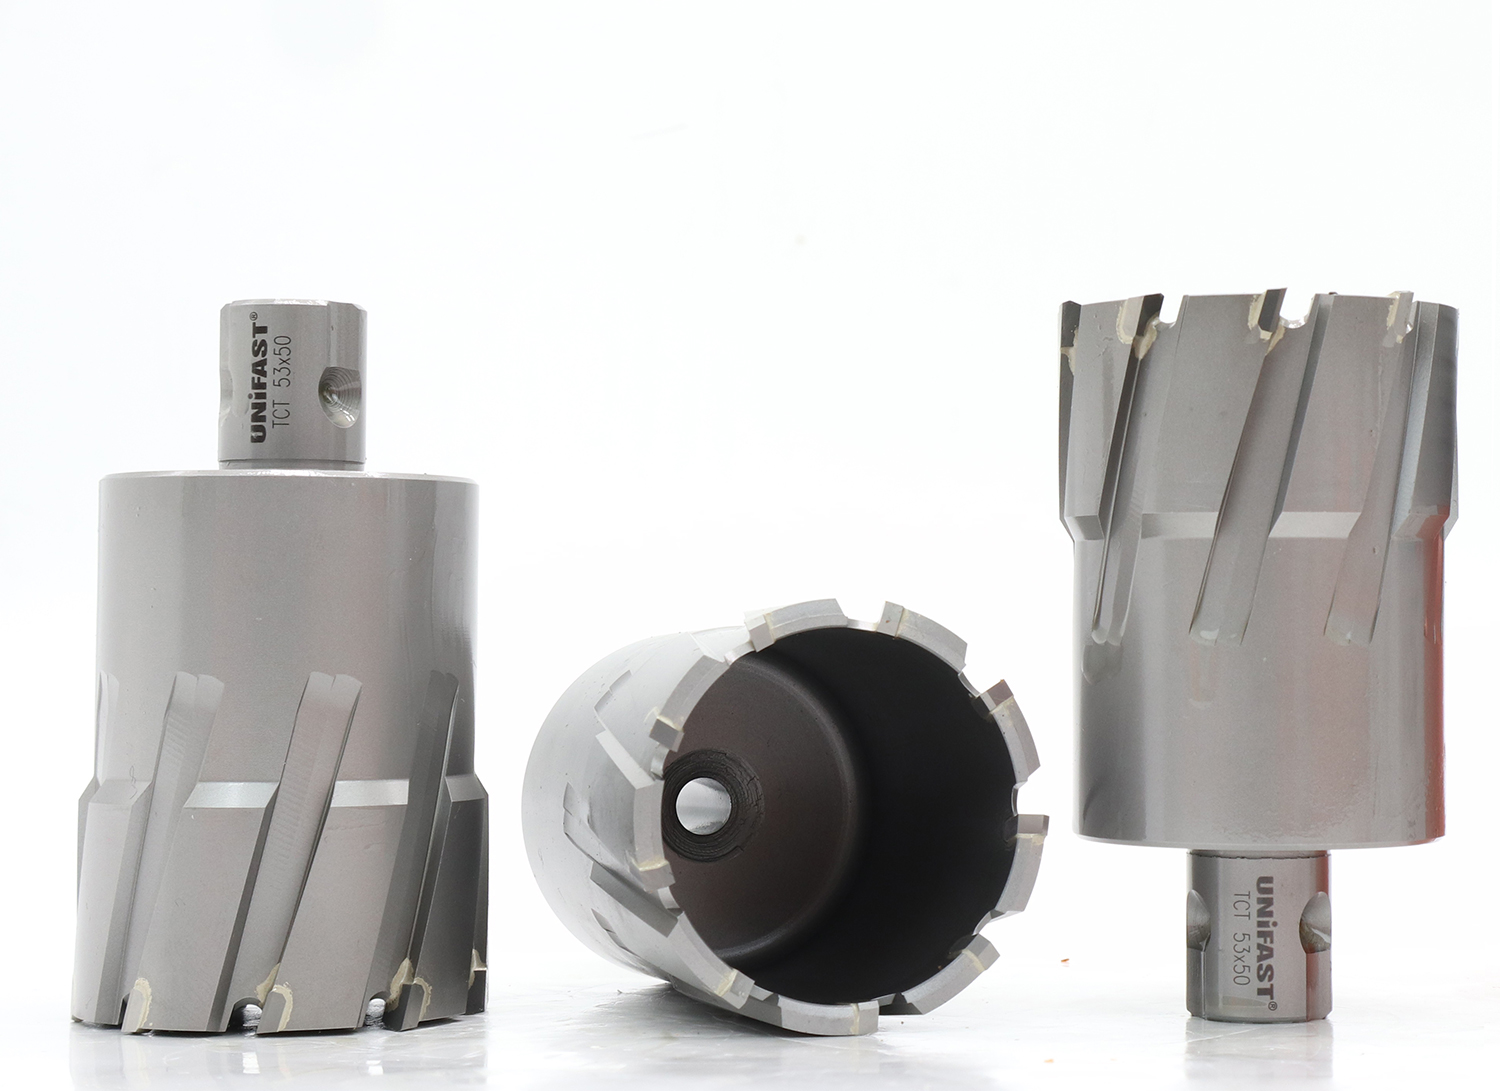 Mũi khoan từ hợp kim UNIFAST TCT Ø 53 mm khoan sâu tối đa 50 mm sử dụng trên mọi loại máy khoan đế từ.